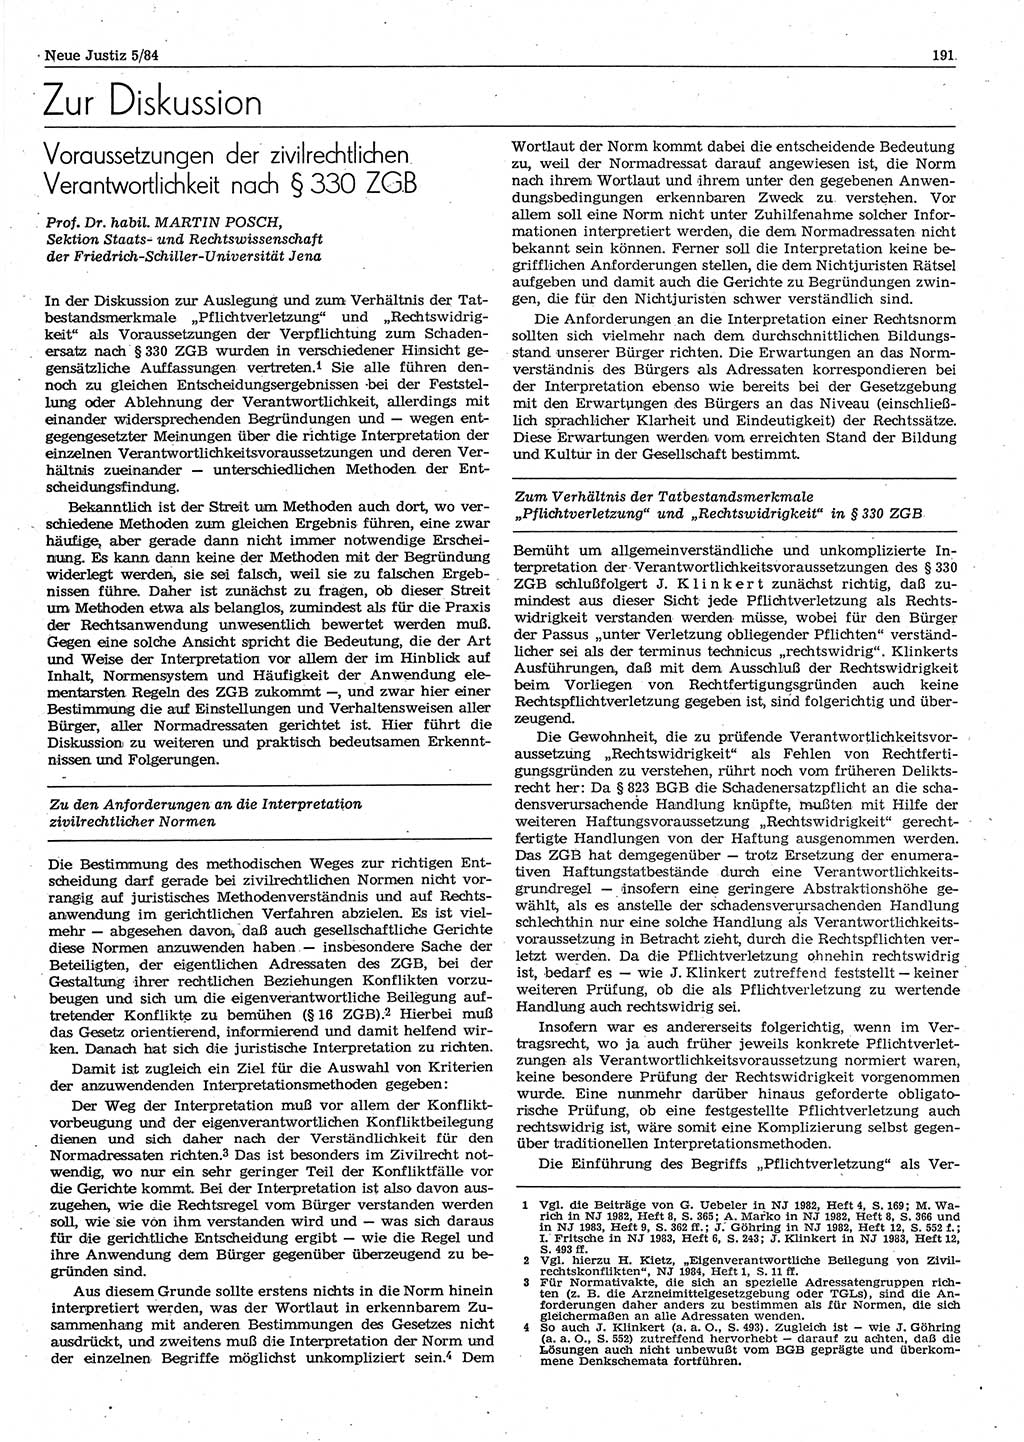 Neue Justiz (NJ), Zeitschrift für sozialistisches Recht und Gesetzlichkeit [Deutsche Demokratische Republik (DDR)], 38. Jahrgang 1984, Seite 191 (NJ DDR 1984, S. 191)